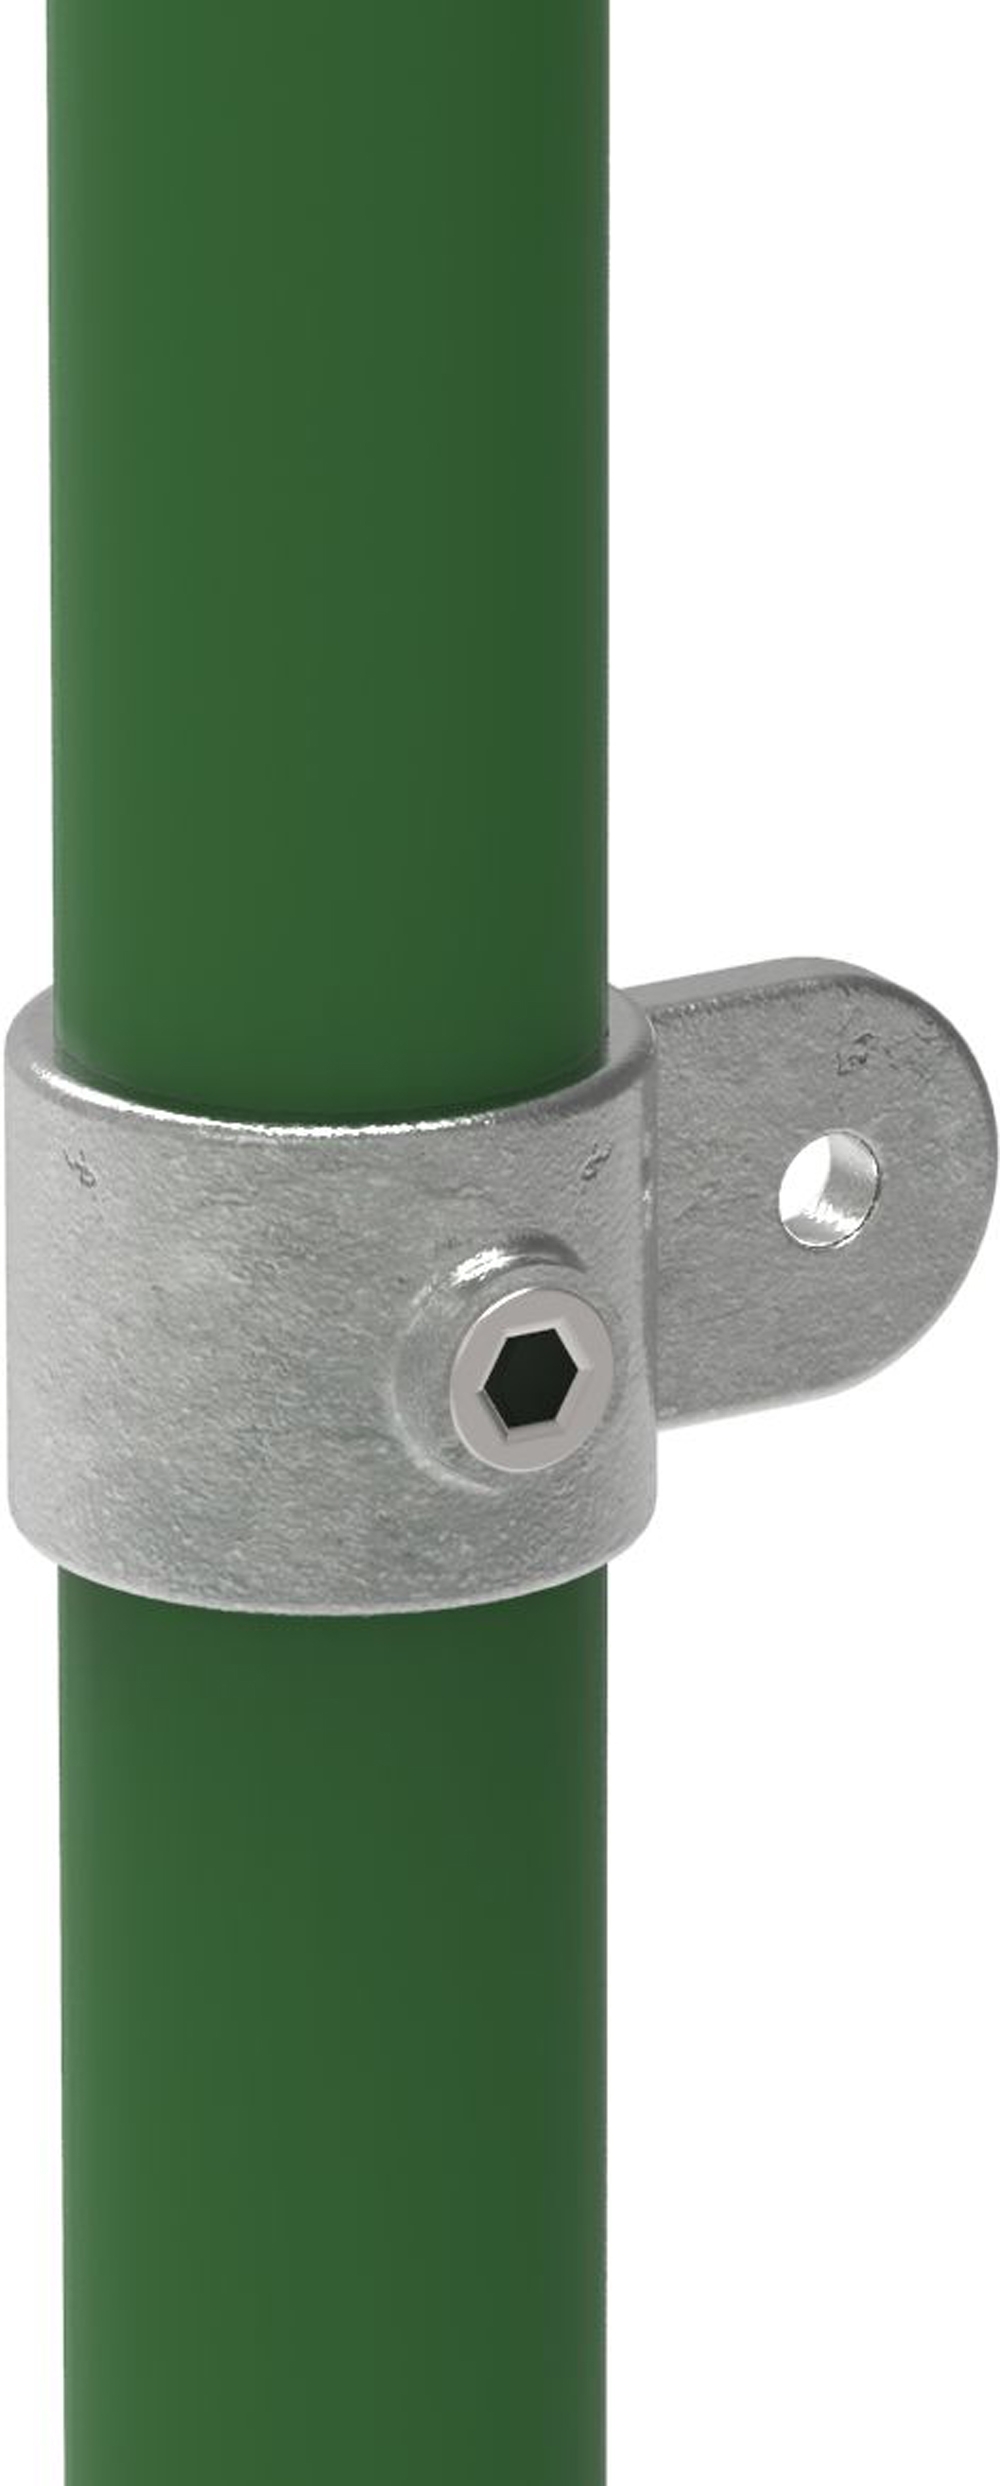 Rohrverbinder | Gelenkauge einfach | 173MC42 | 42,4 mm | 1 1/4" | Feuerverzinkt u. Elektrogalvanisiert